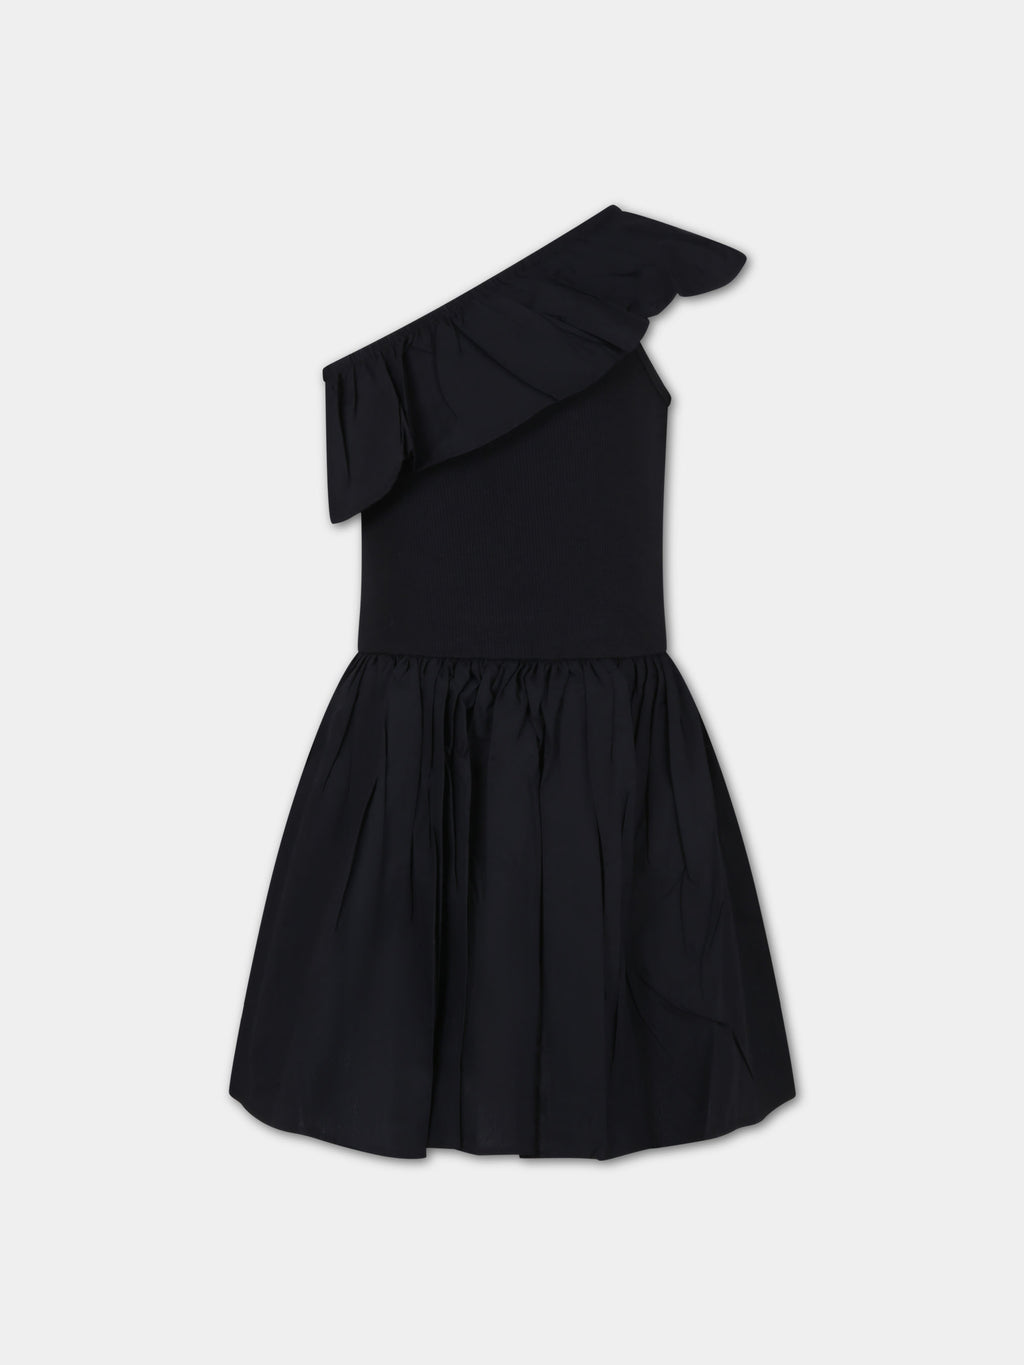 Black dress for girl